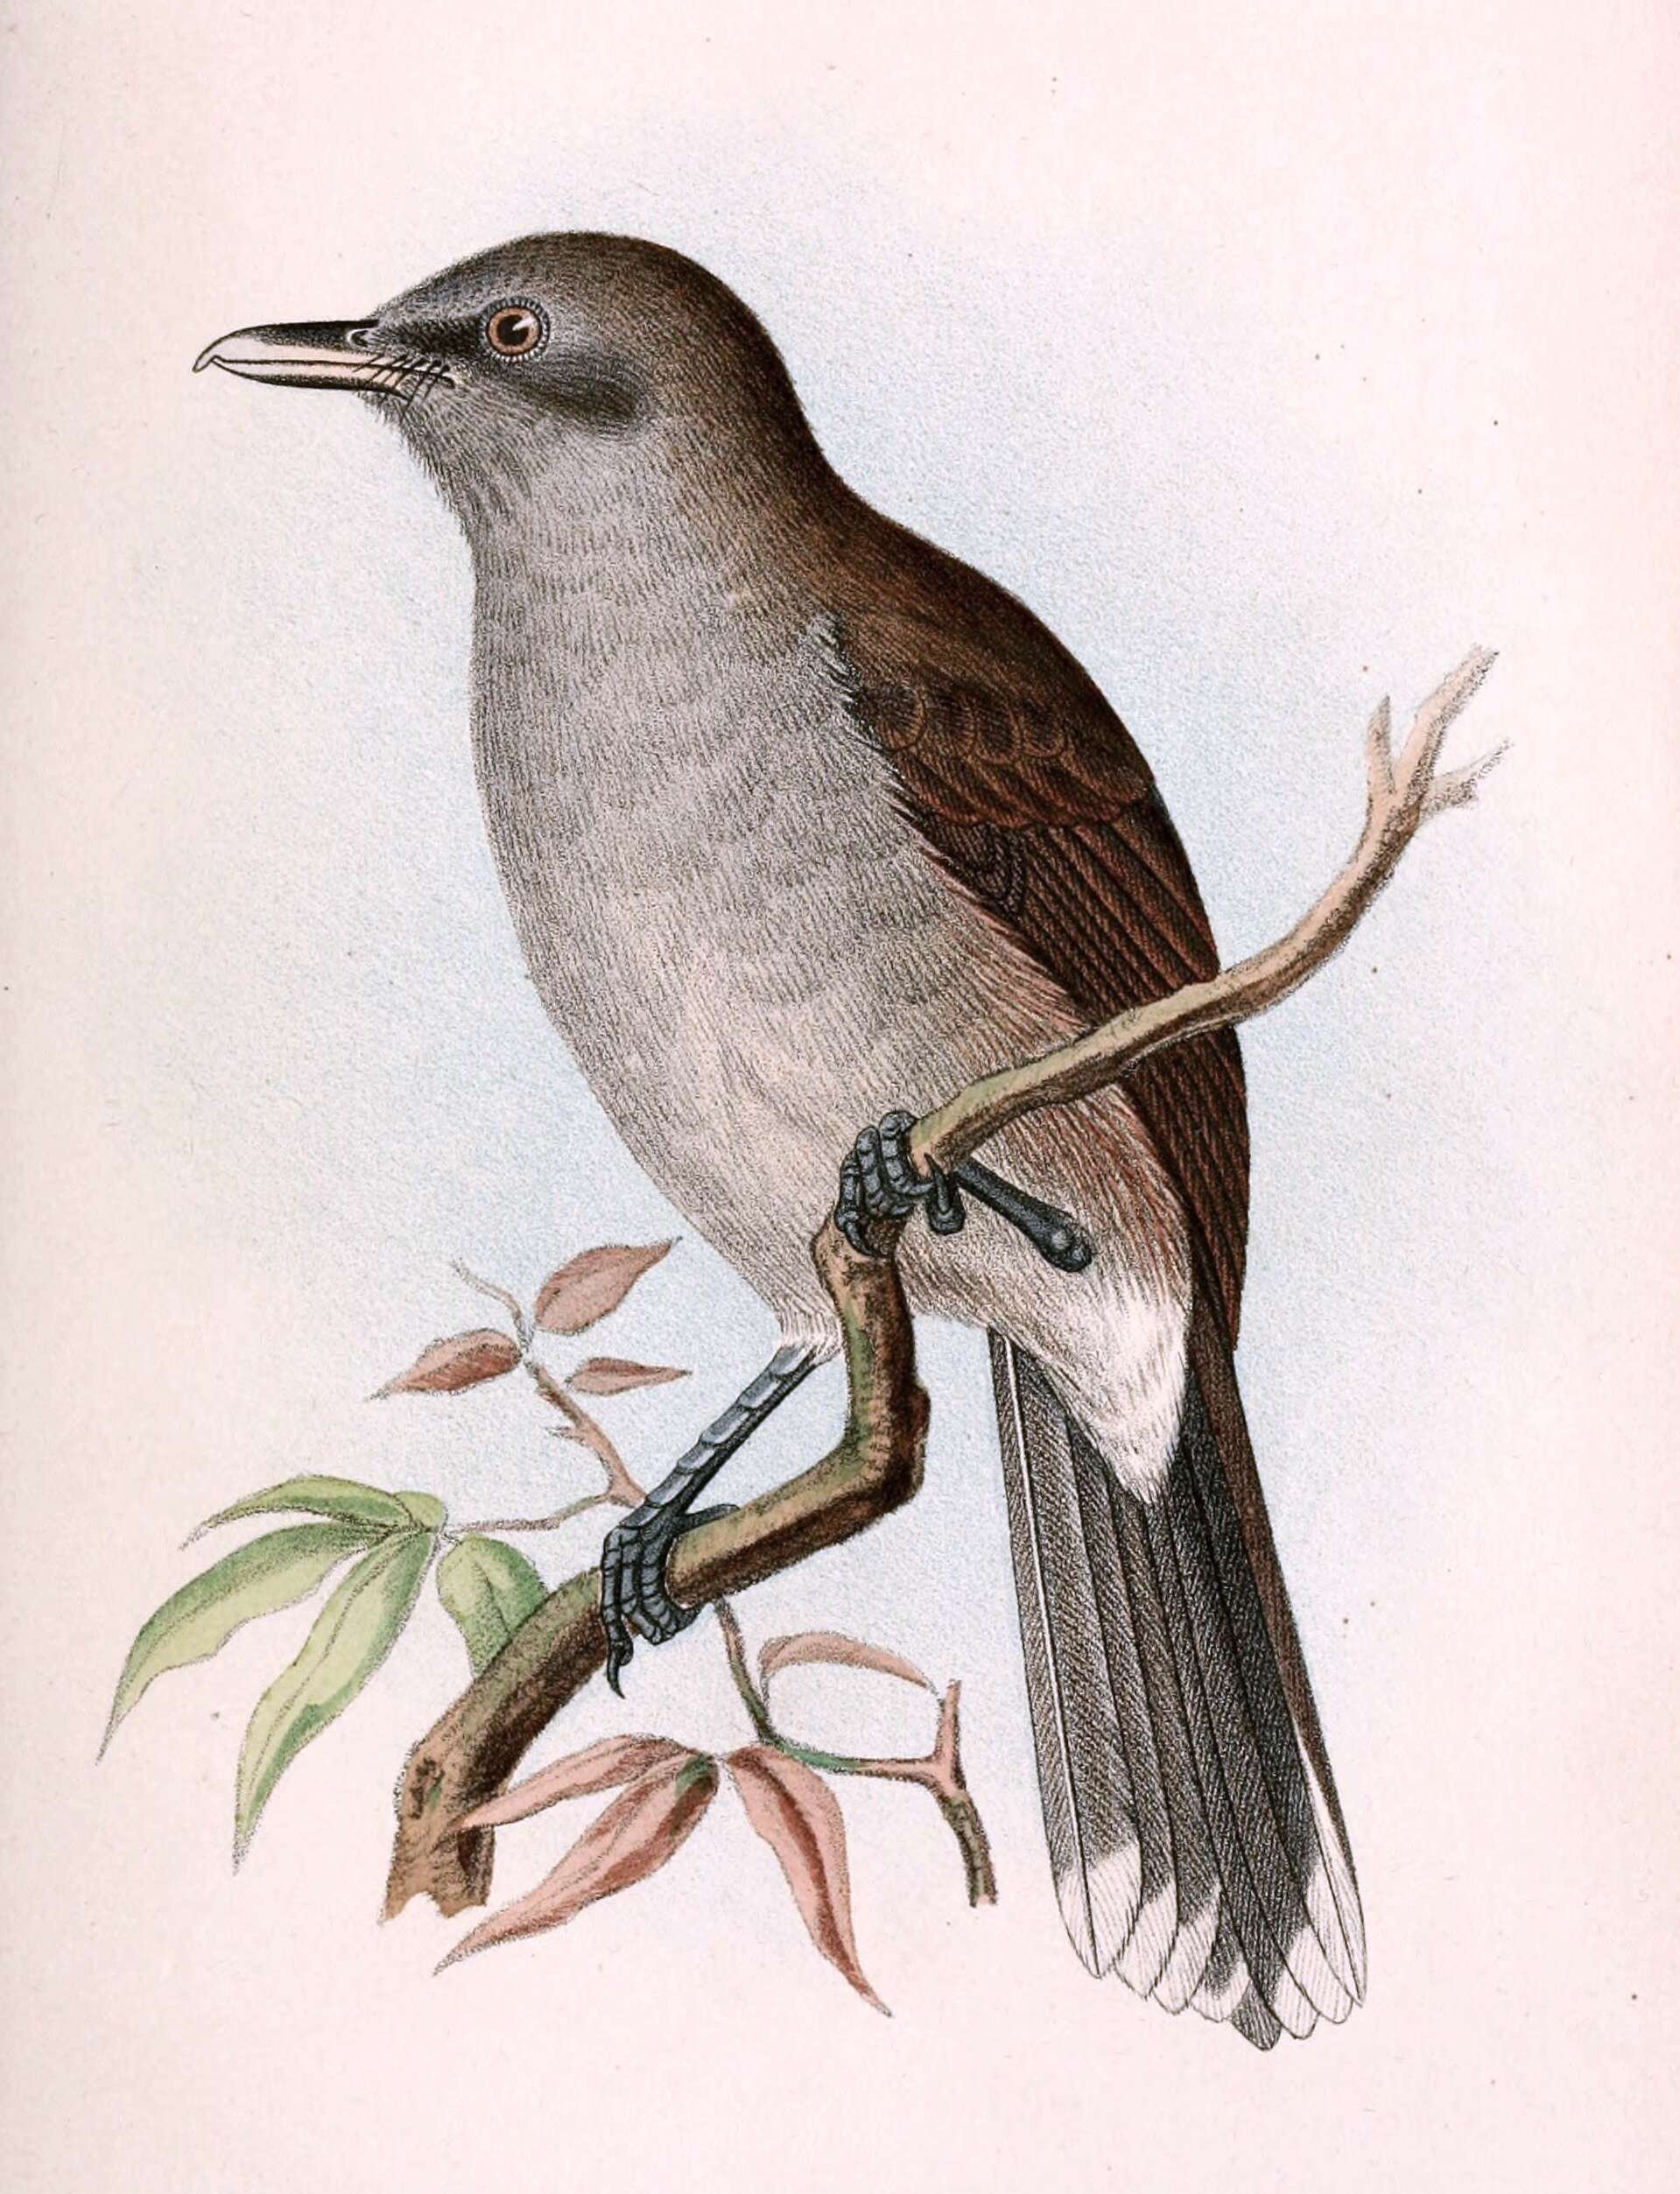 Image of Shrikebill